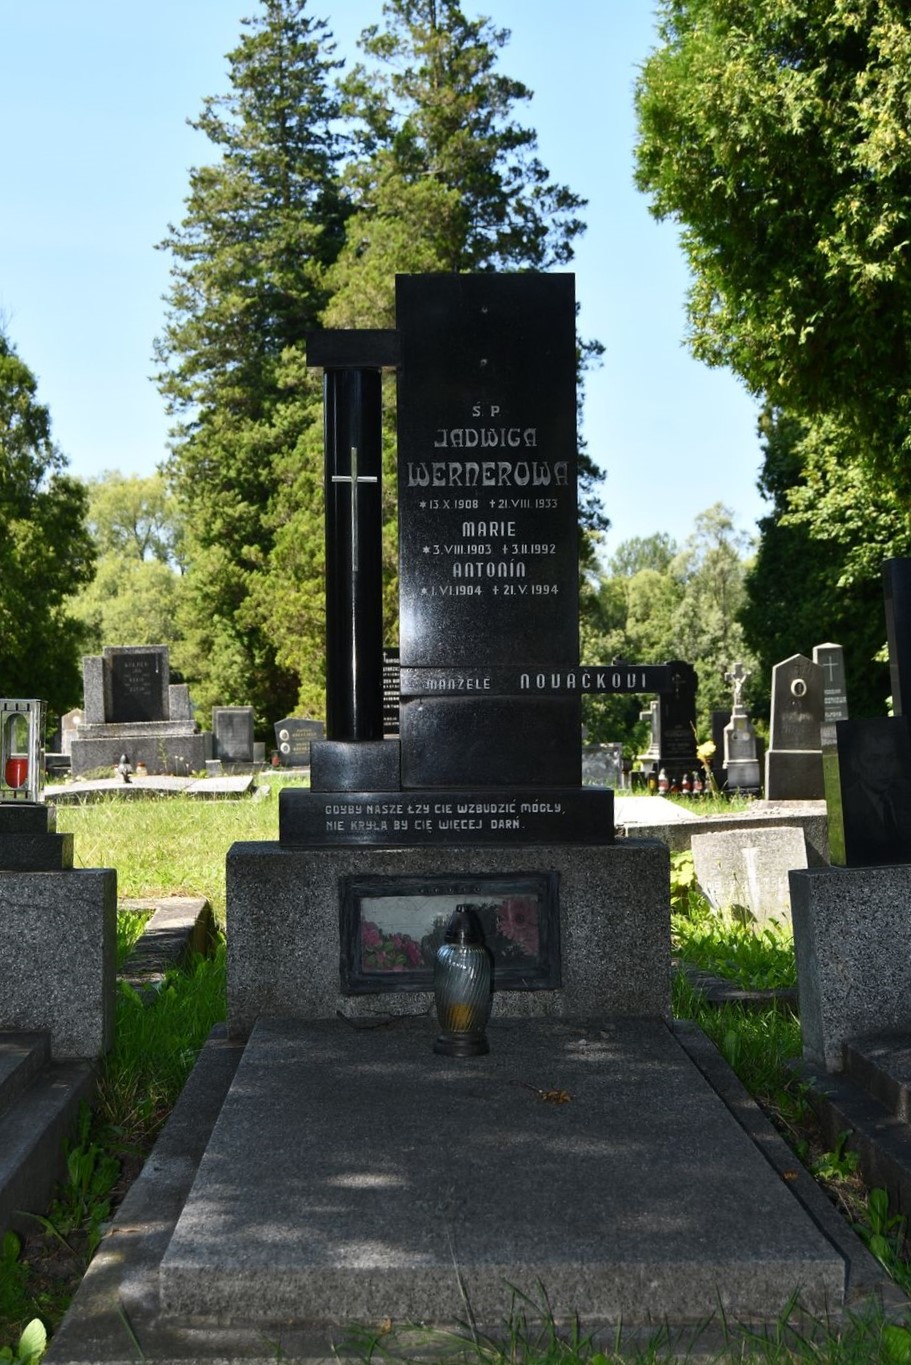 Fotografia przedstawiająca Tombstone of the Werner family and Manželé Nováckovi